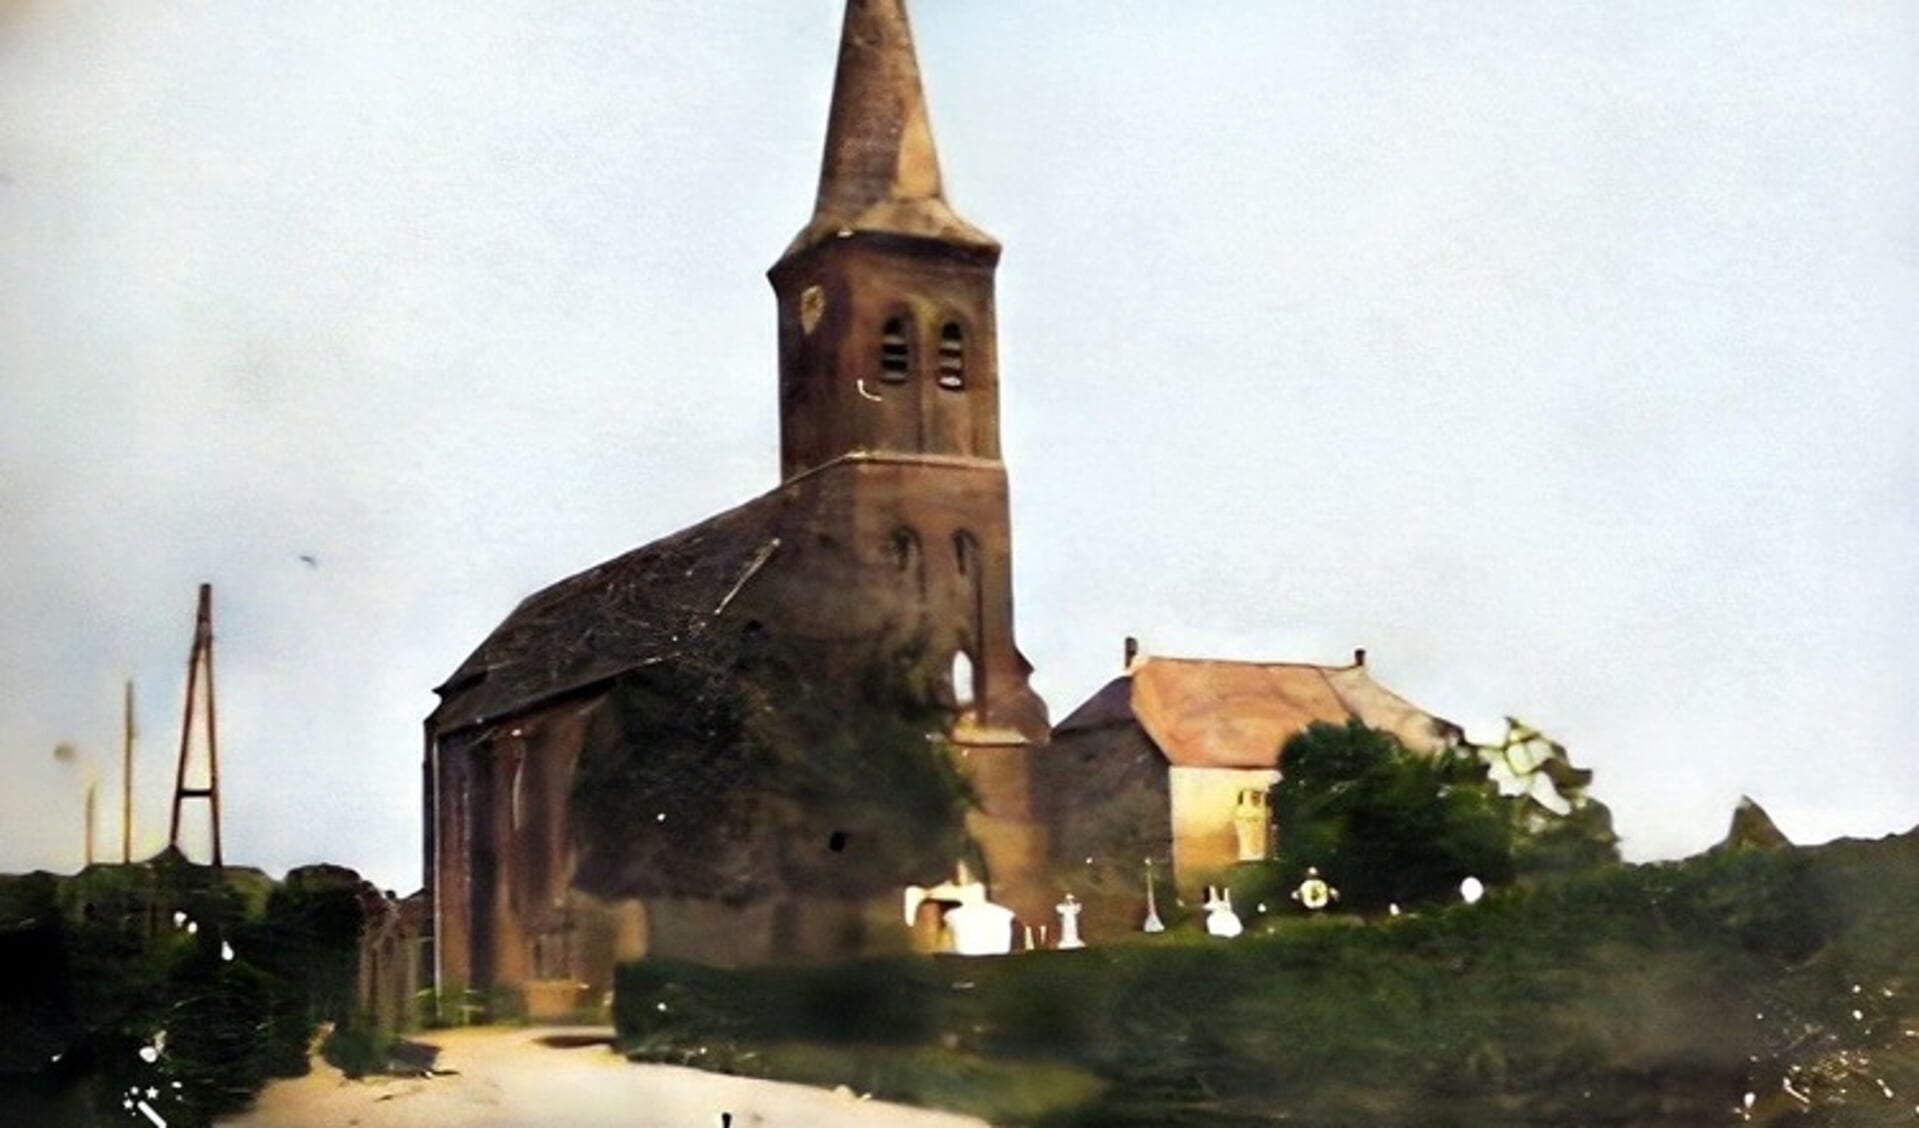 De oude kerk van Siebengewald in 1945 gebombardeerd